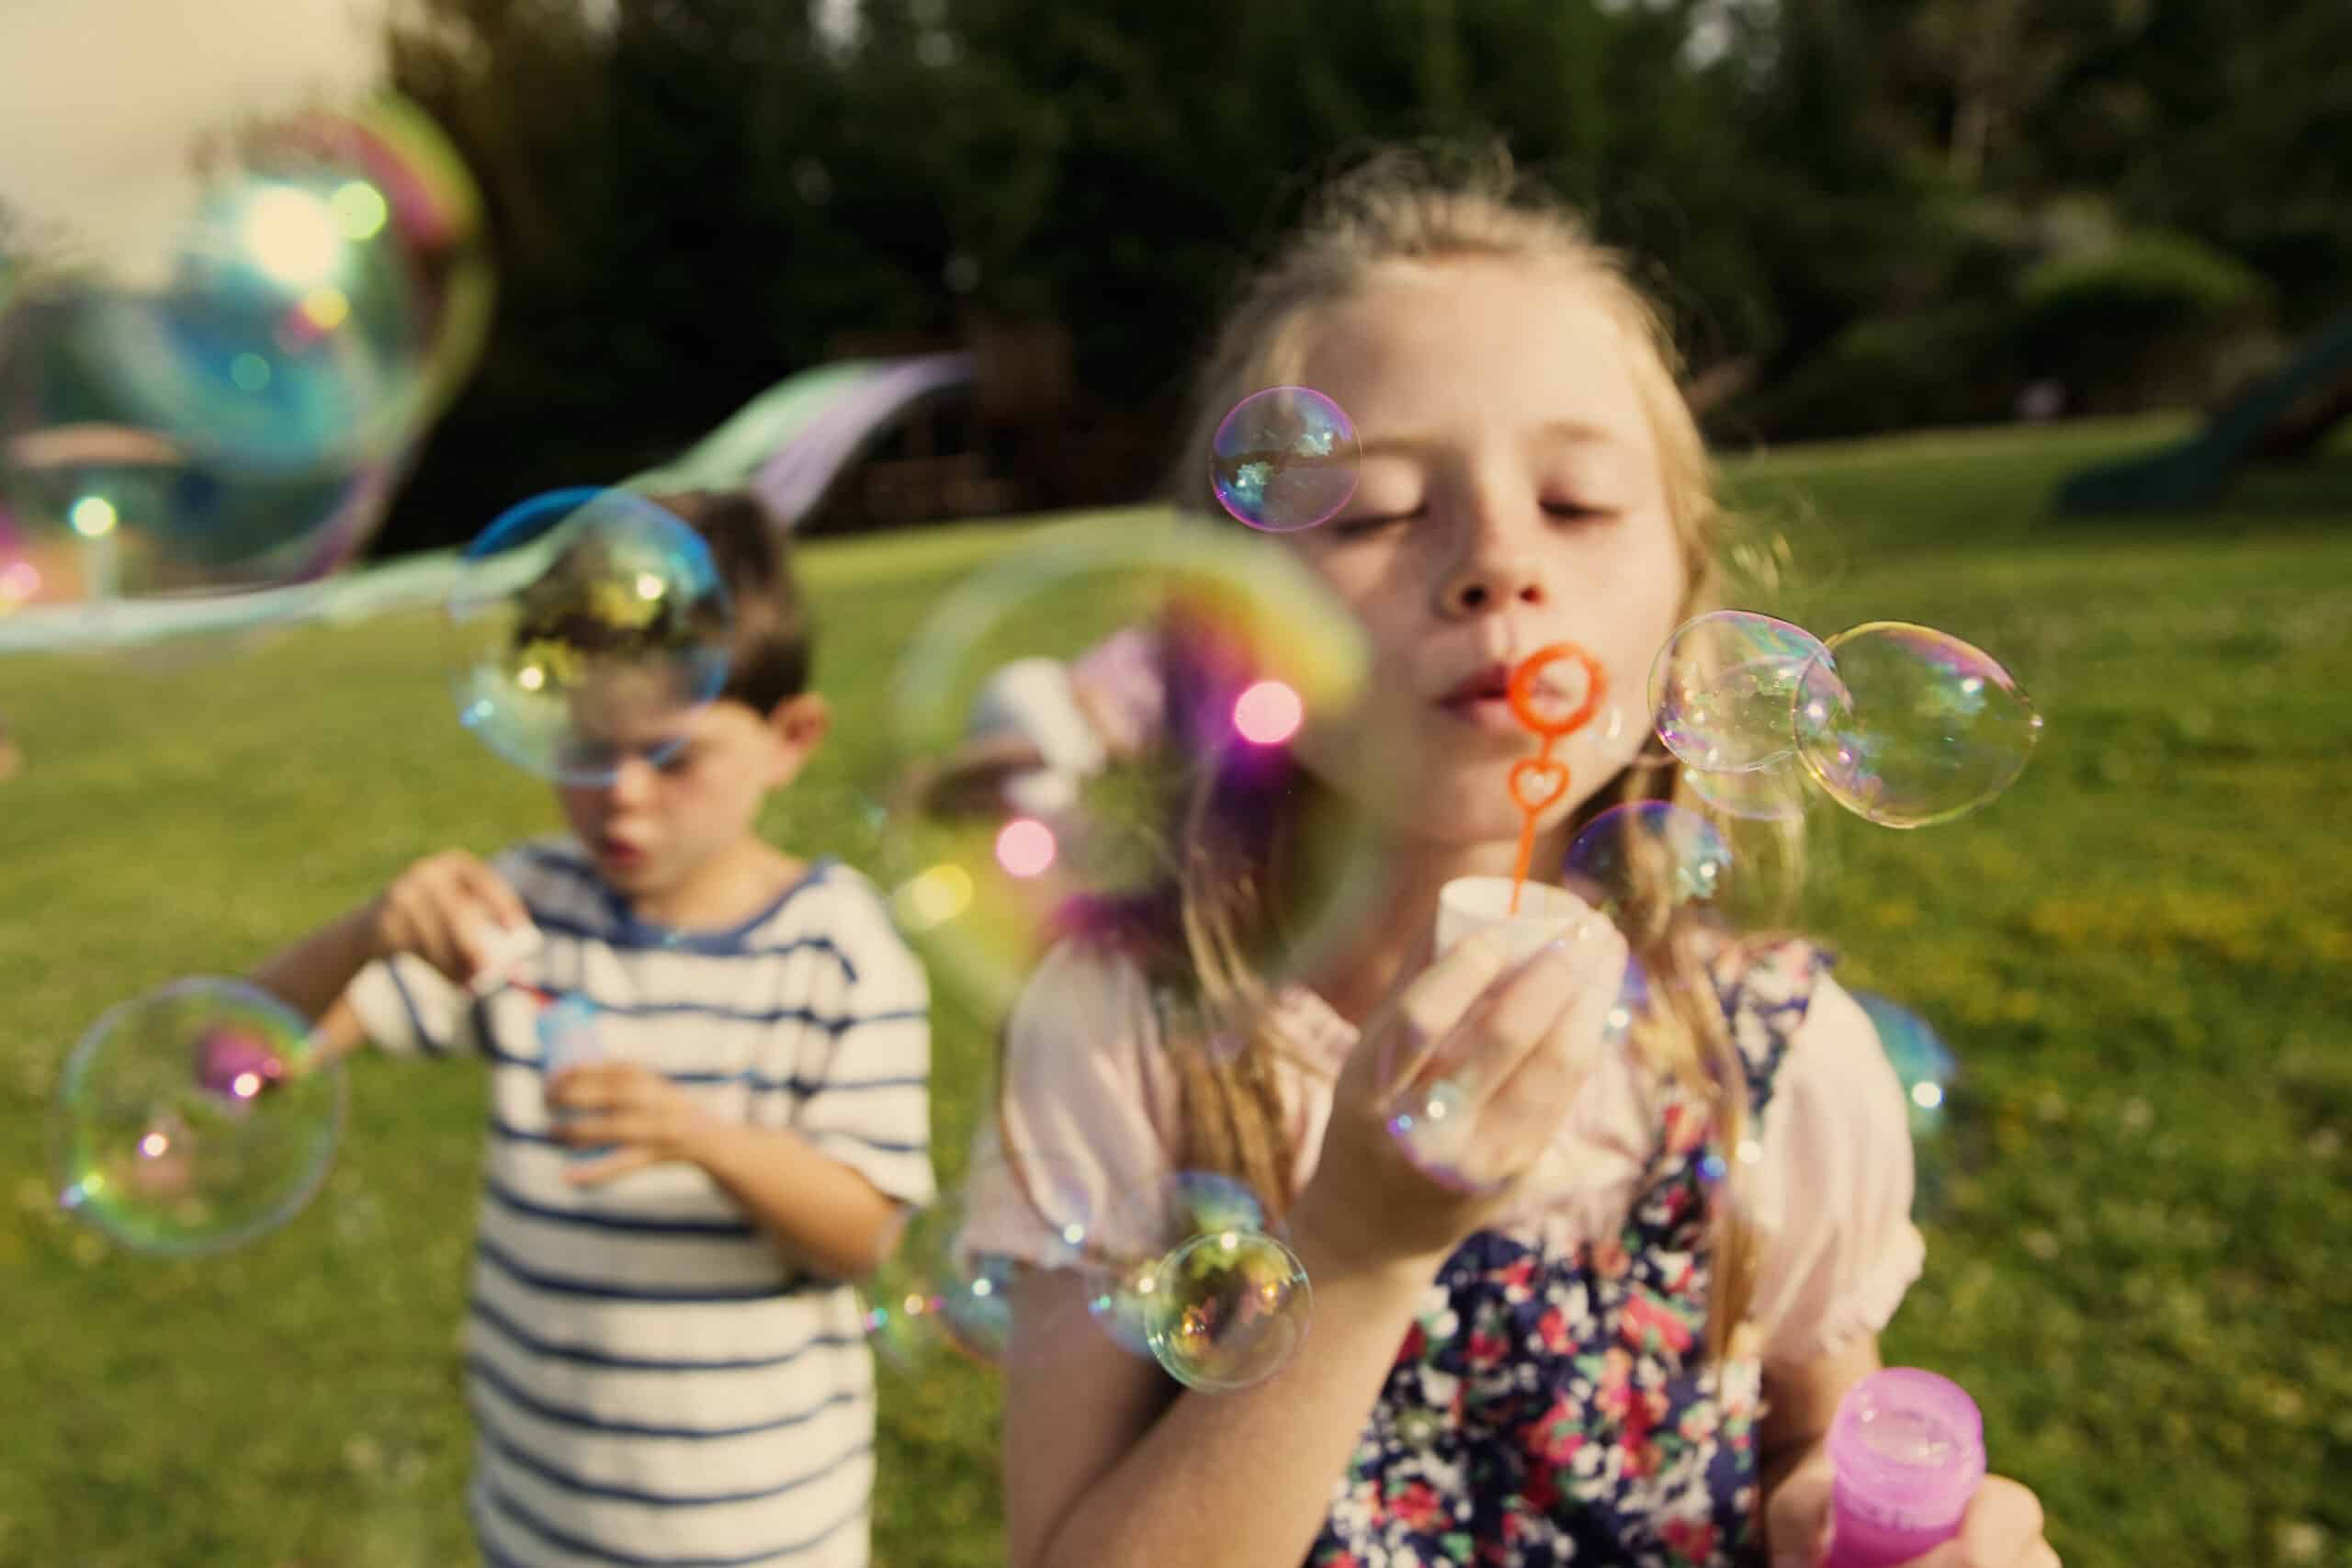 Im Fokus ist ein junges Mädchen zu sehen, das mit einem Stab Seifenblasen bläst, während im Hintergrund ein Junge ebenfalls mit Blasen spielt; das Ganze in einem sonnigen Park mit grünem Gras. © Fotografie Tomas Rodriguez